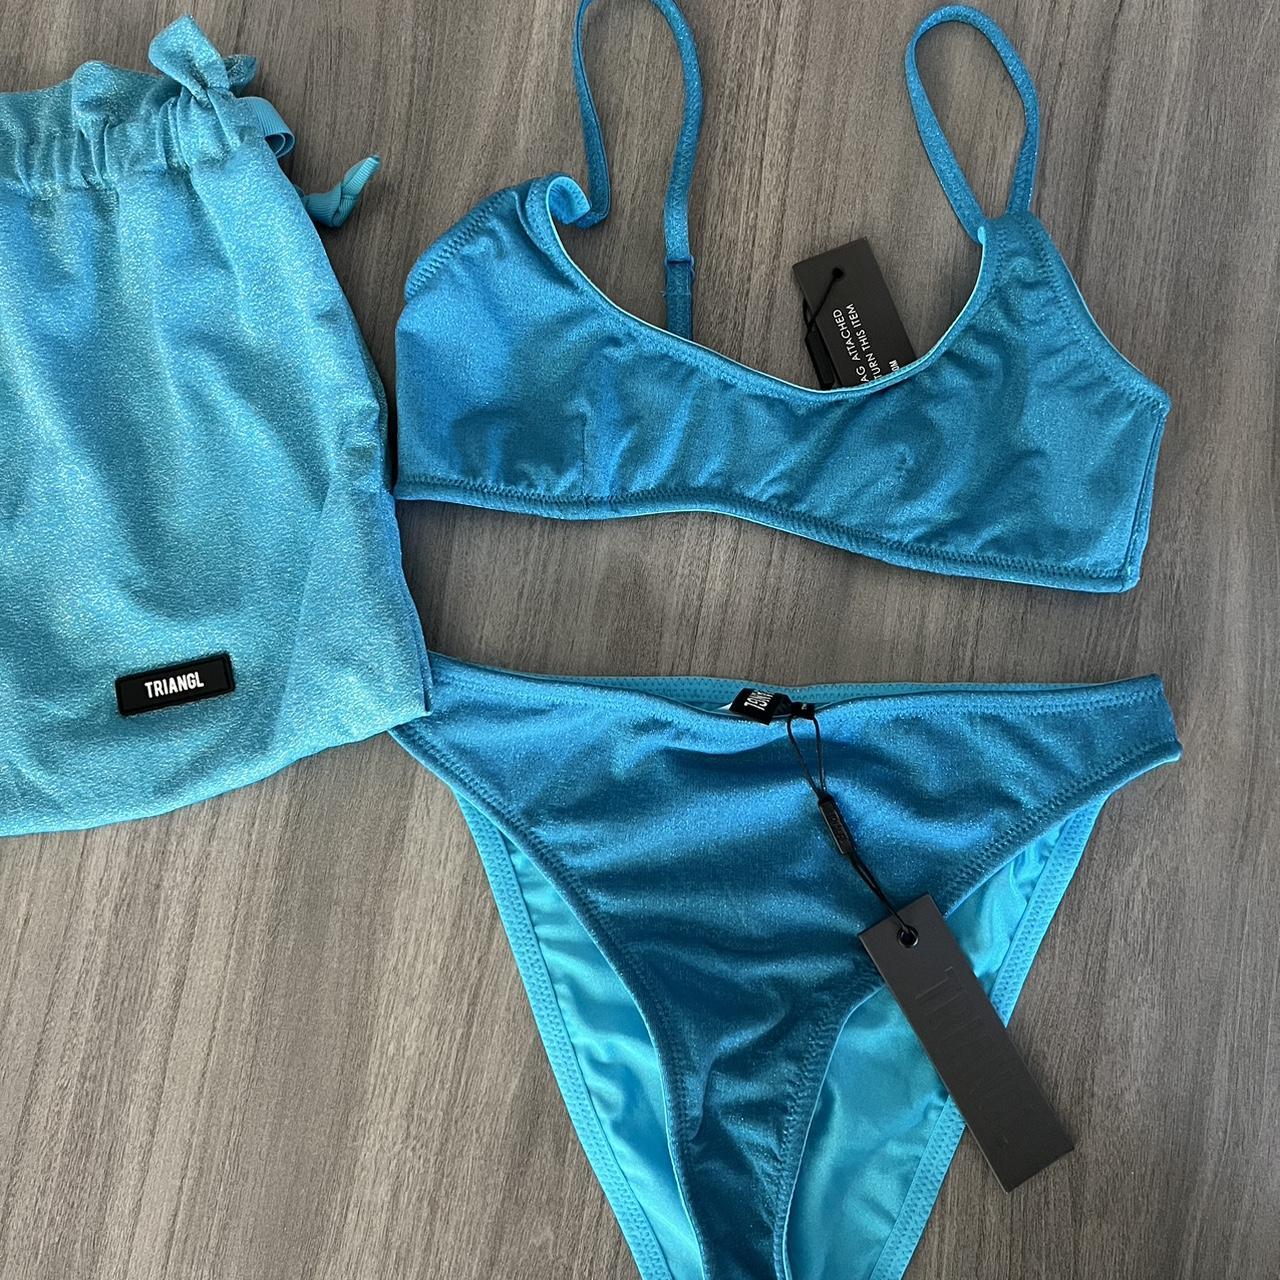 triangl swimwear, Swim, Blue Sparkle Triangl Bikini Top With Travel Bag